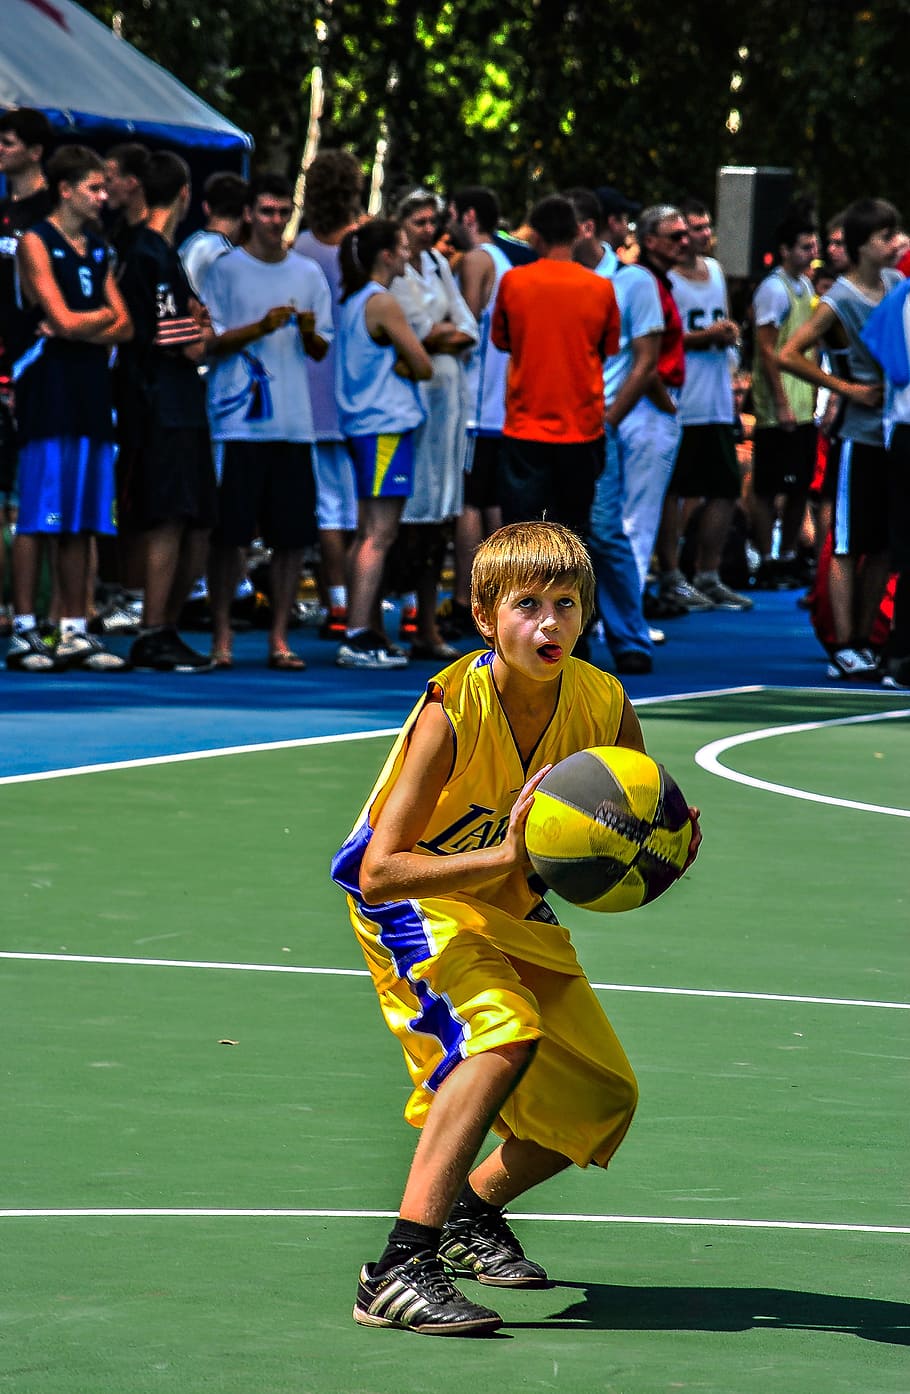 basketball, boy, ball, game, yellow, sport, real people, group of people, crowd, large group of people